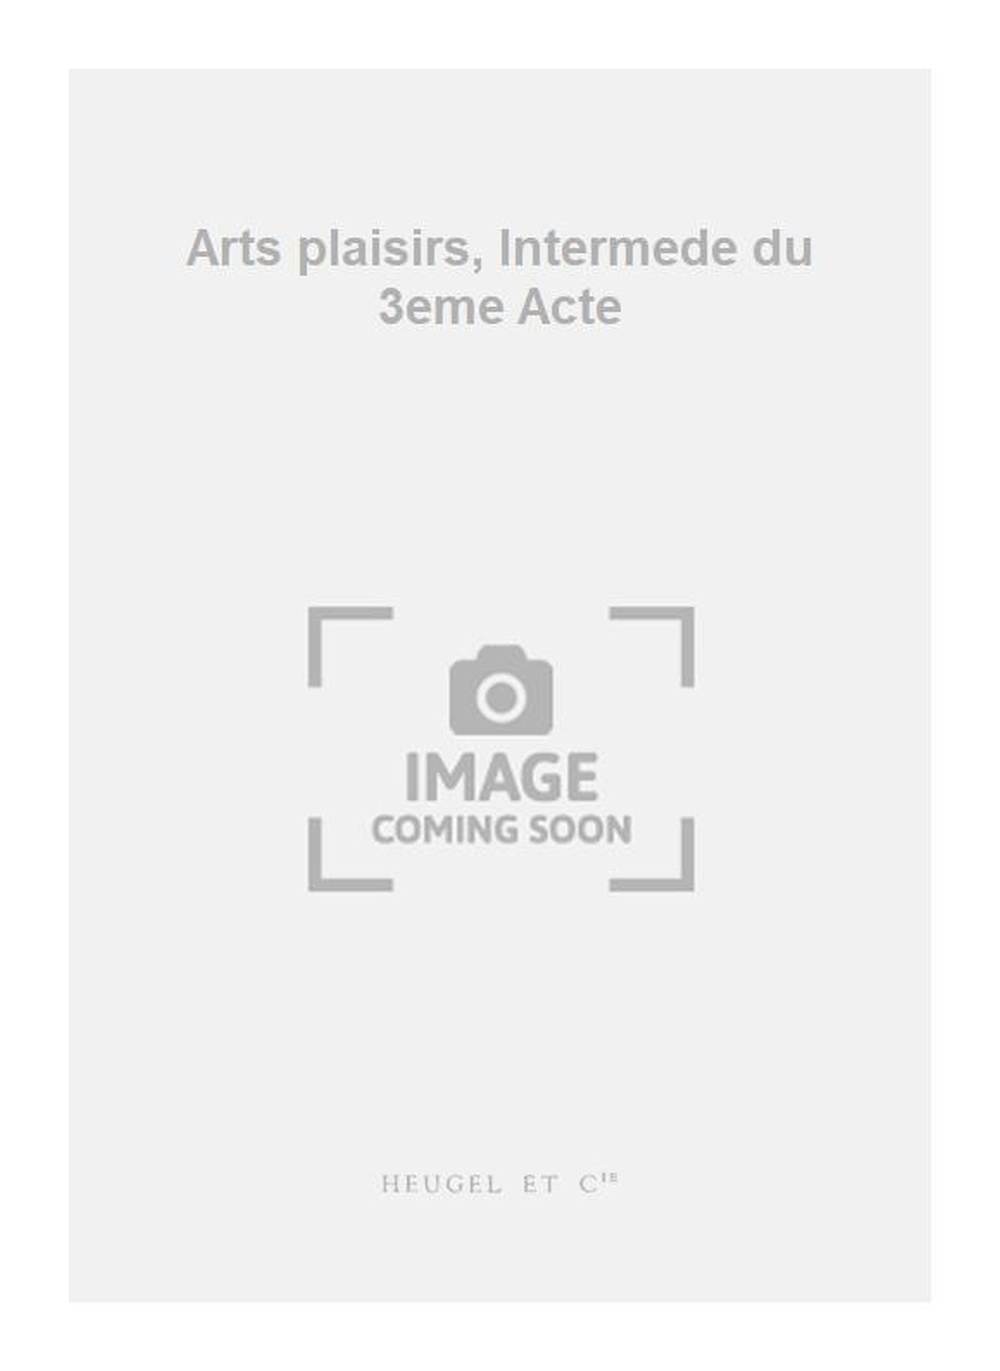 Marc-Antoine Charpentier: Arts plaisirs  Intermede du 3eme Acte